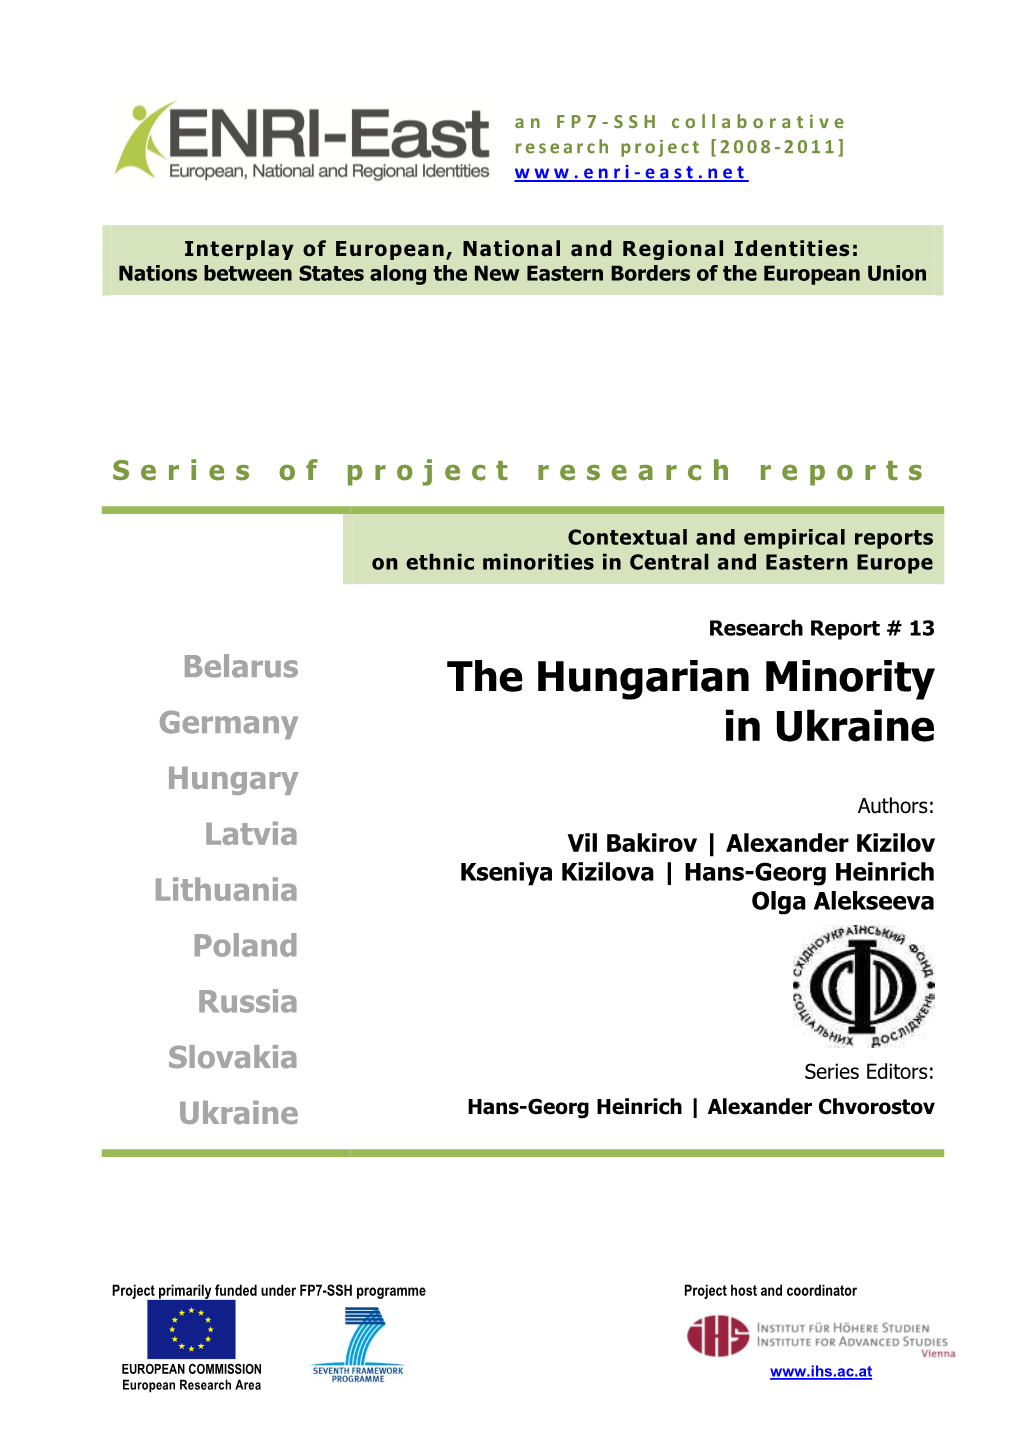 The Hungarian Minority in Ukraine (Pdf)